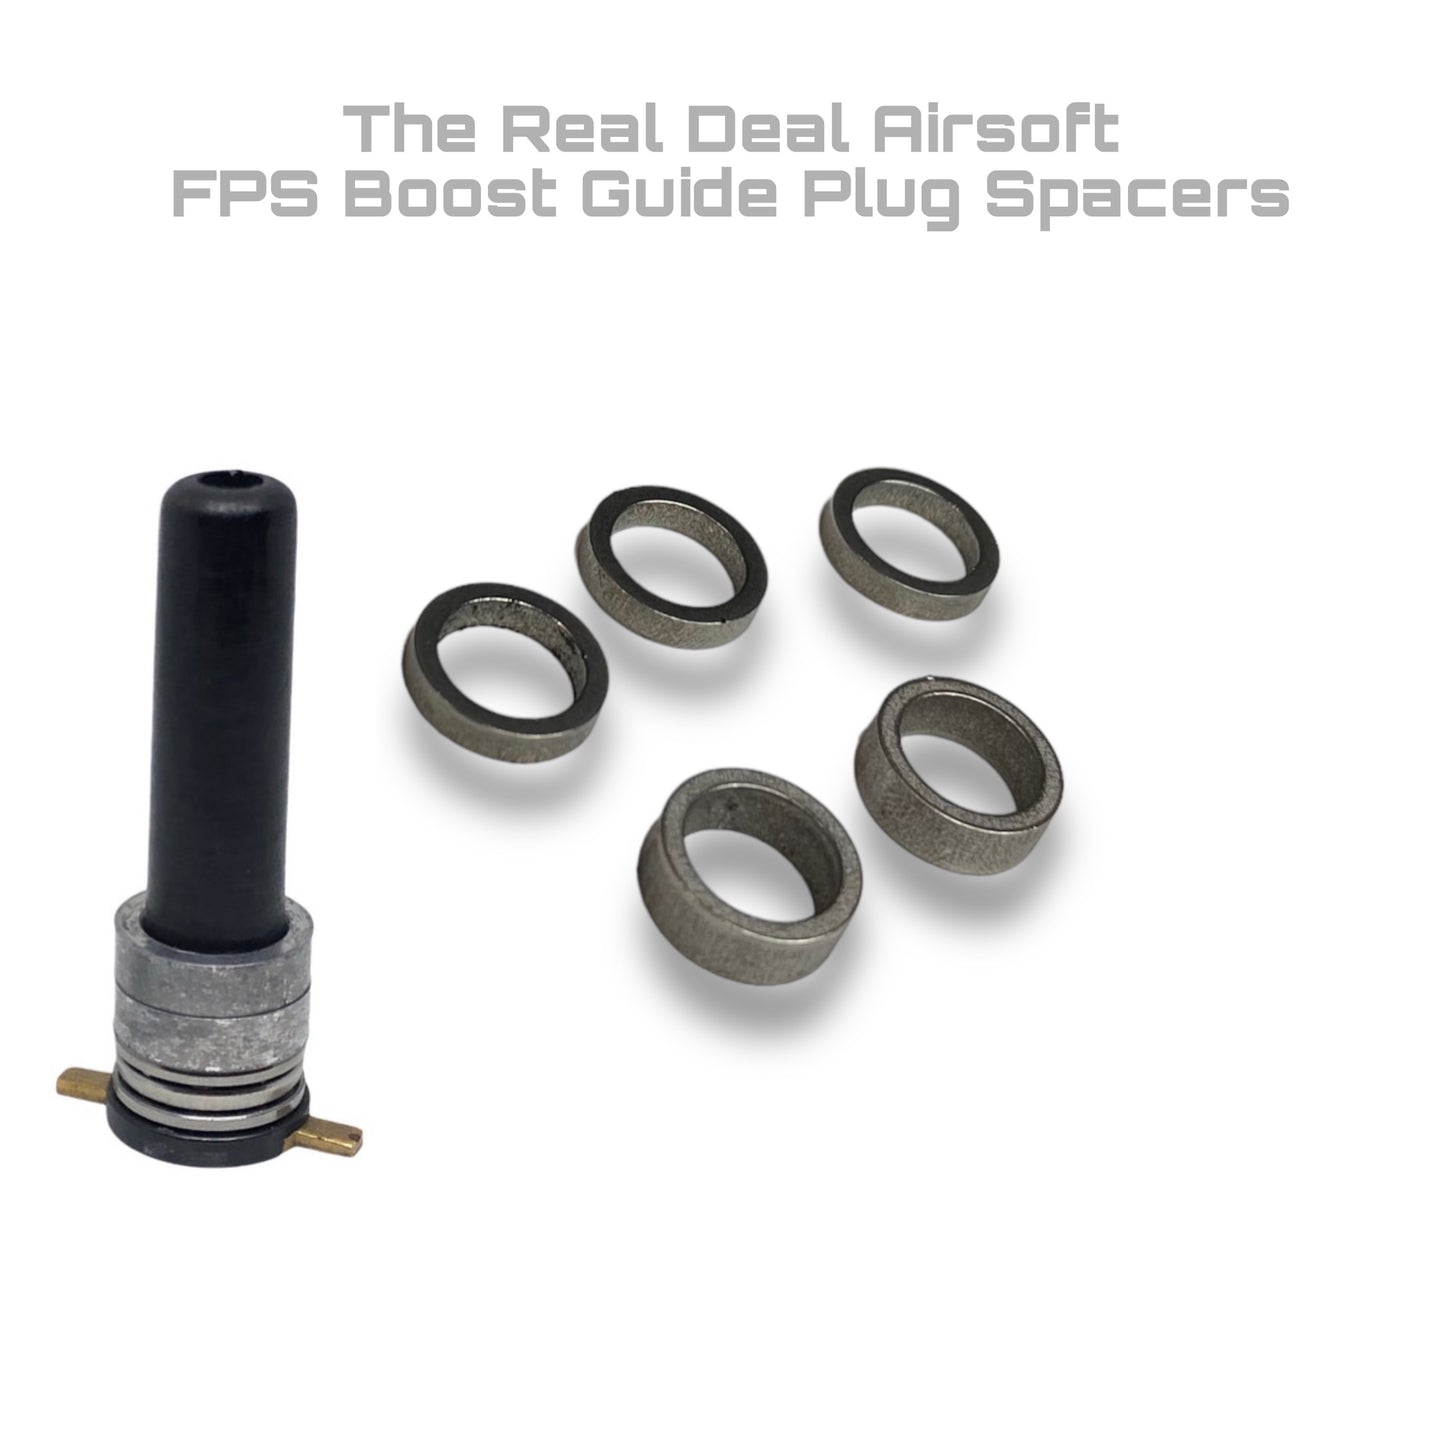 FPS Boost Guide Plug Spacers